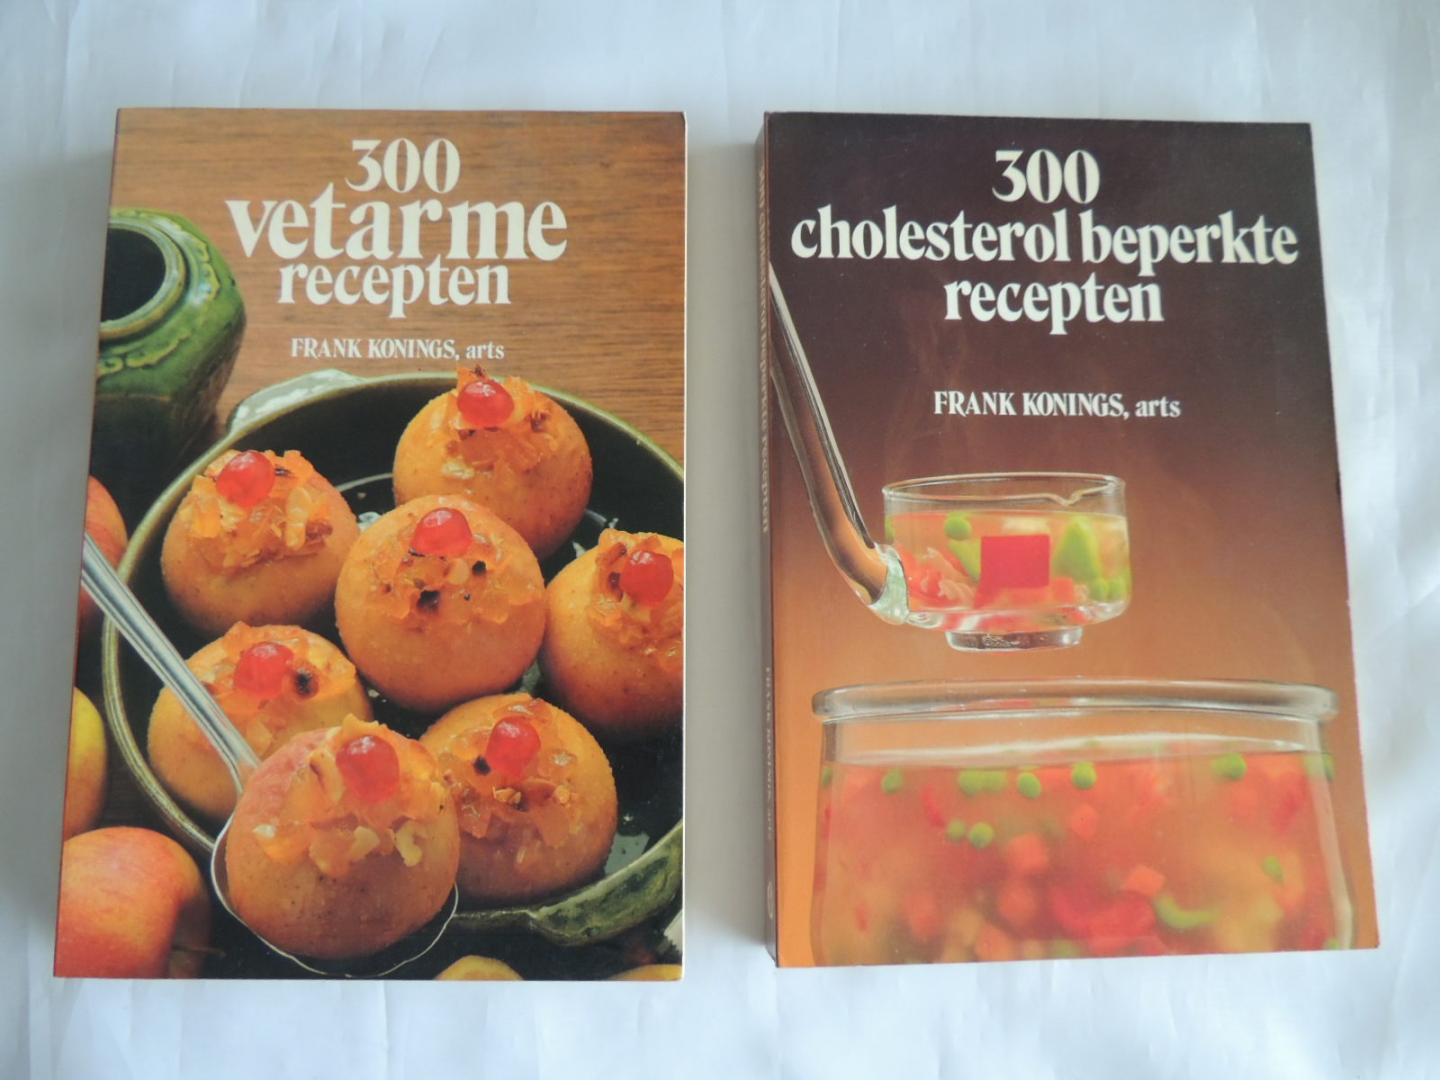 Konings, Frank - 300 Vetarme recepten / 300 cholesterol beperkte recepten